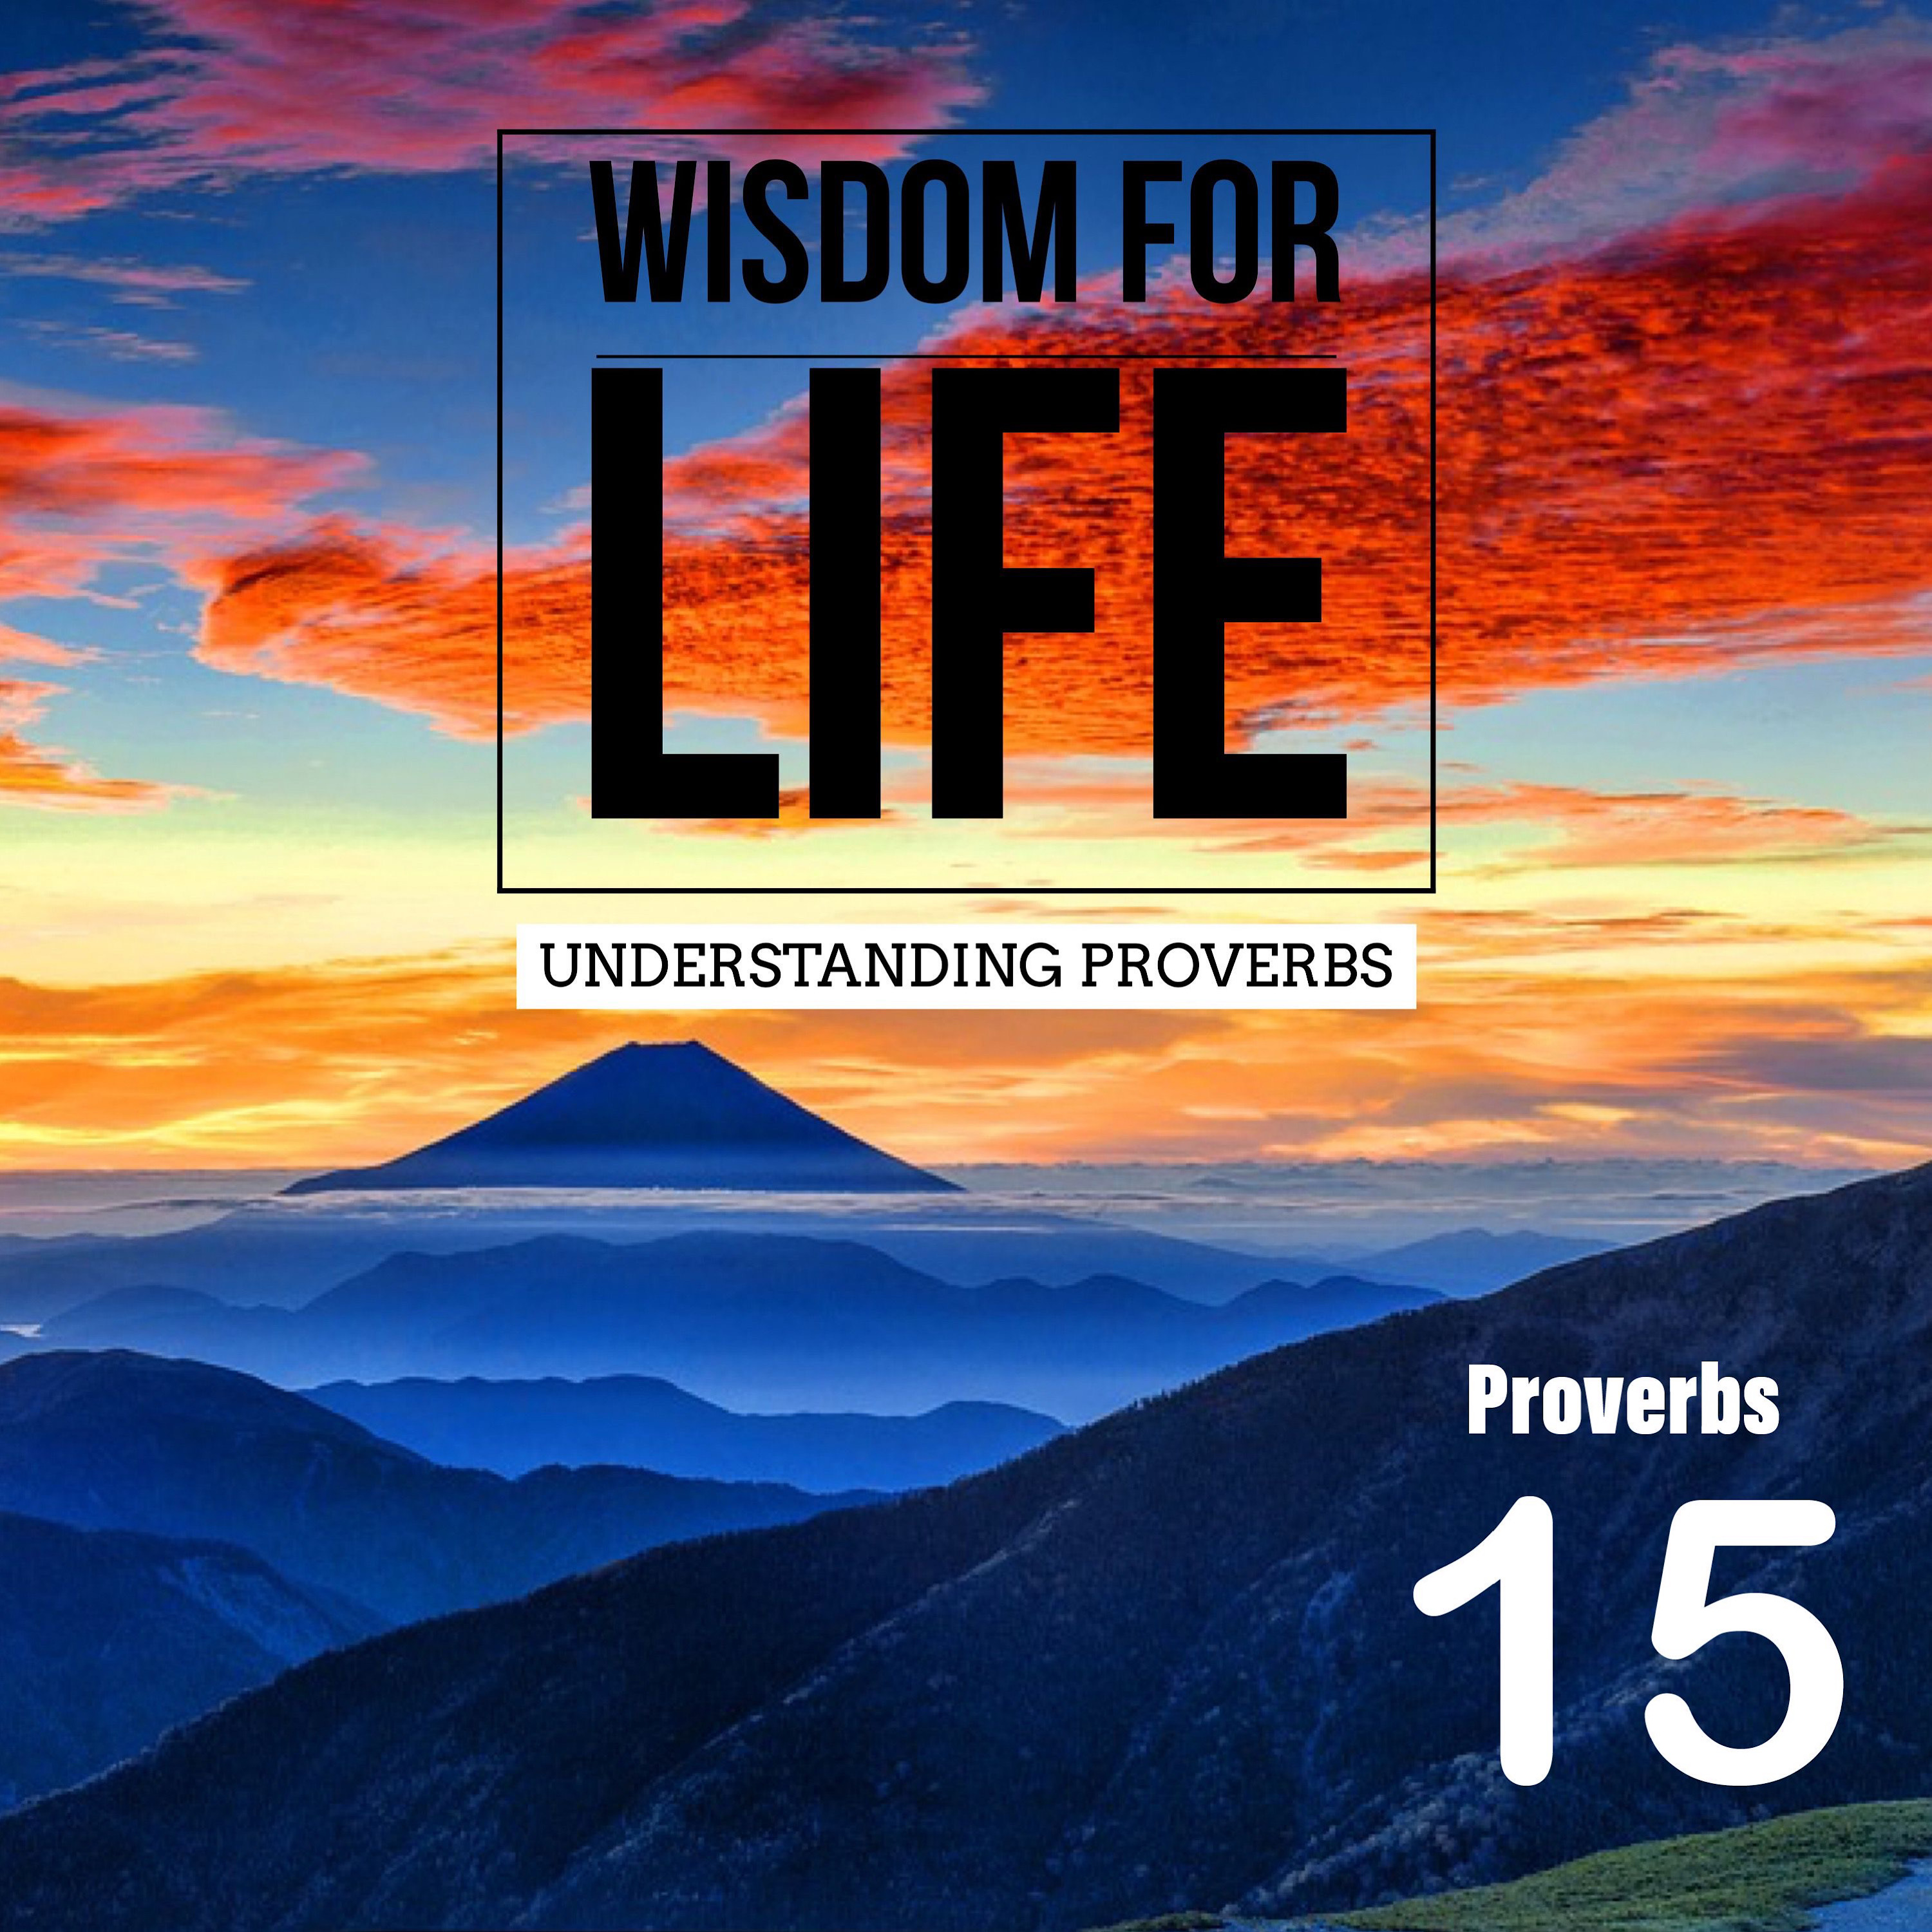 UNDERSTANDING PROVERBS 15